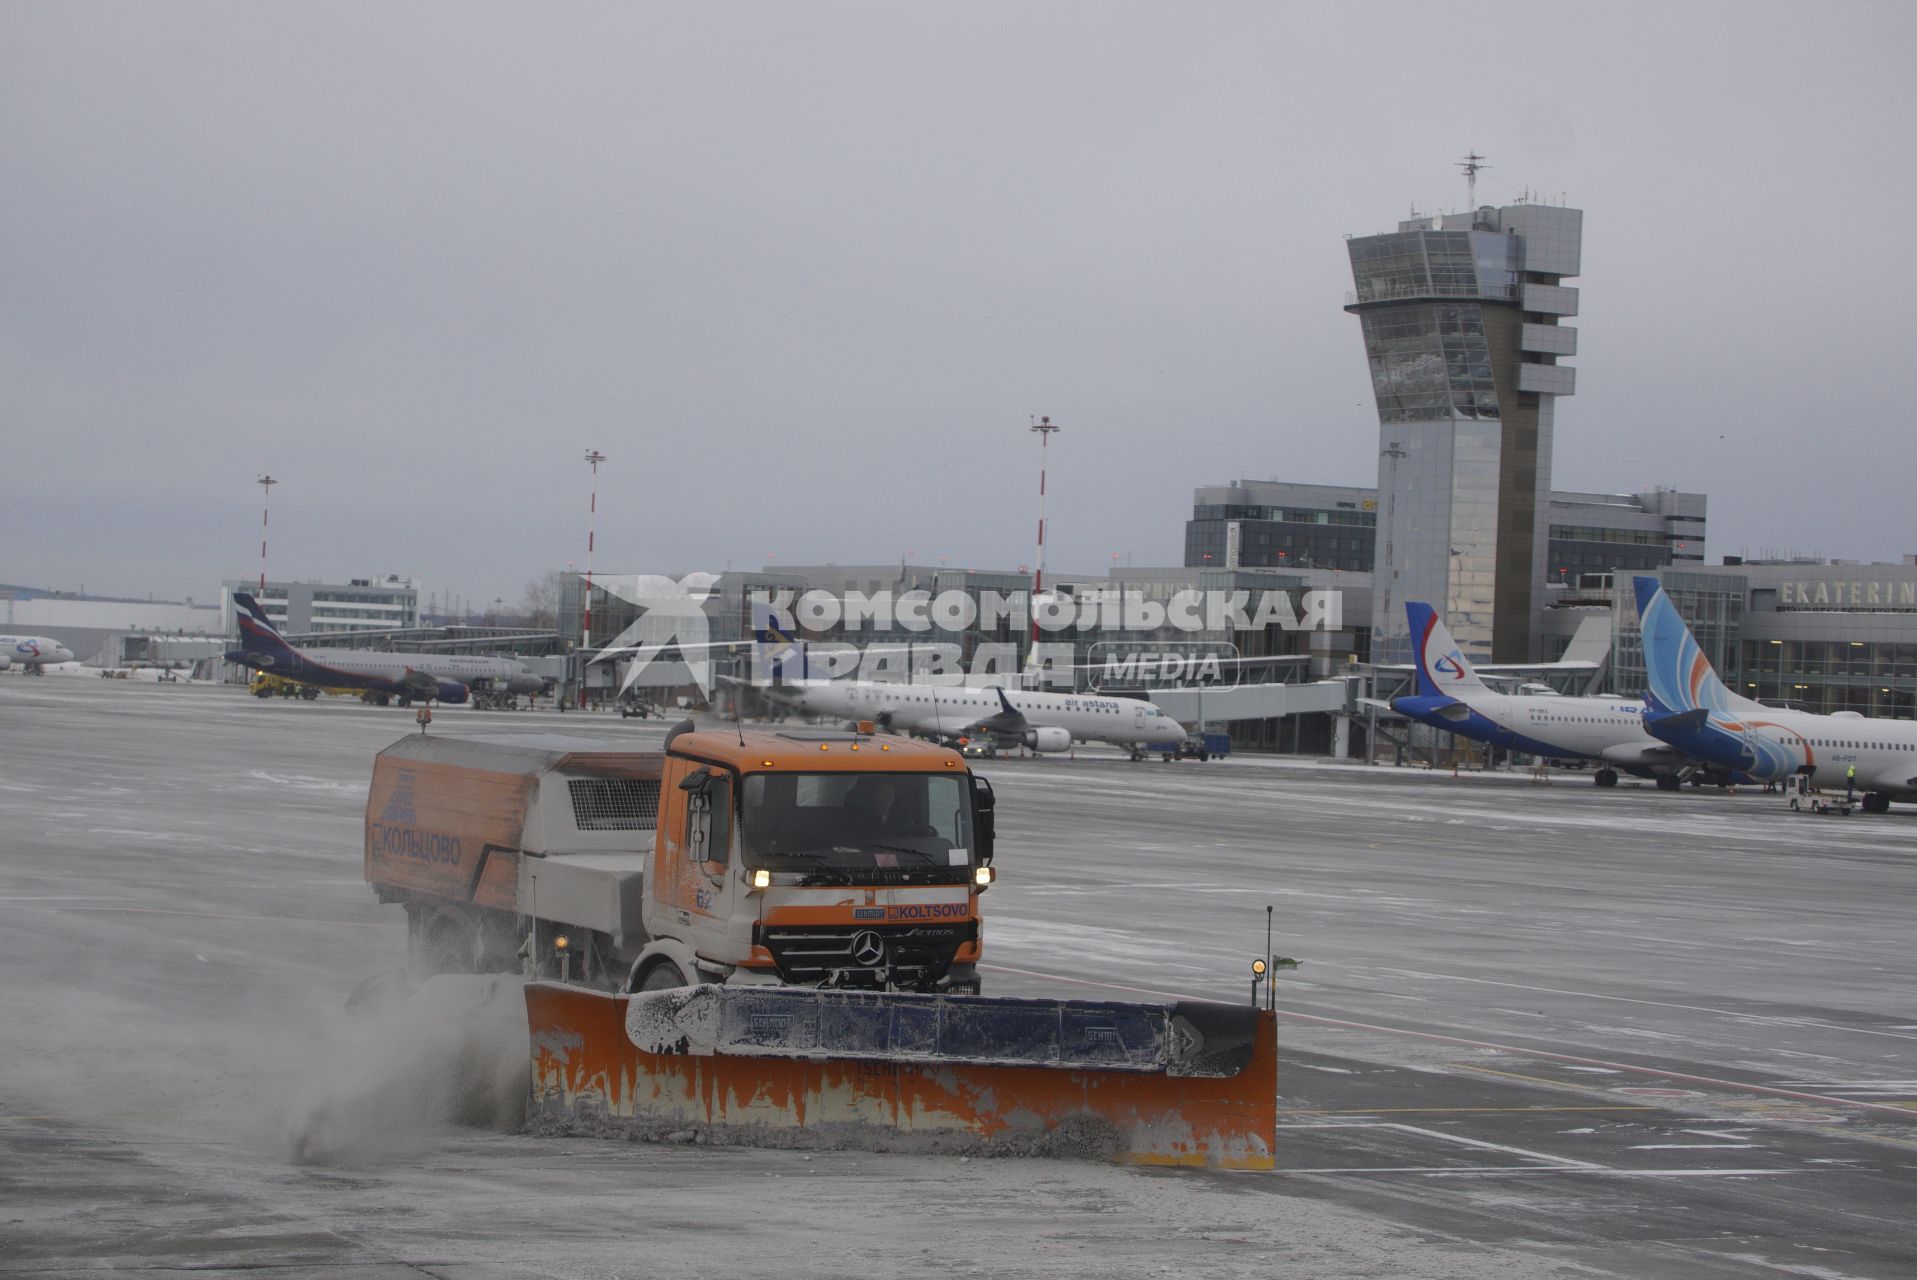 Екатеринбург. Аэропорт \'Кольцово\'. Снегоуборочные машины убирают снег с взлетно-посадочной полосы